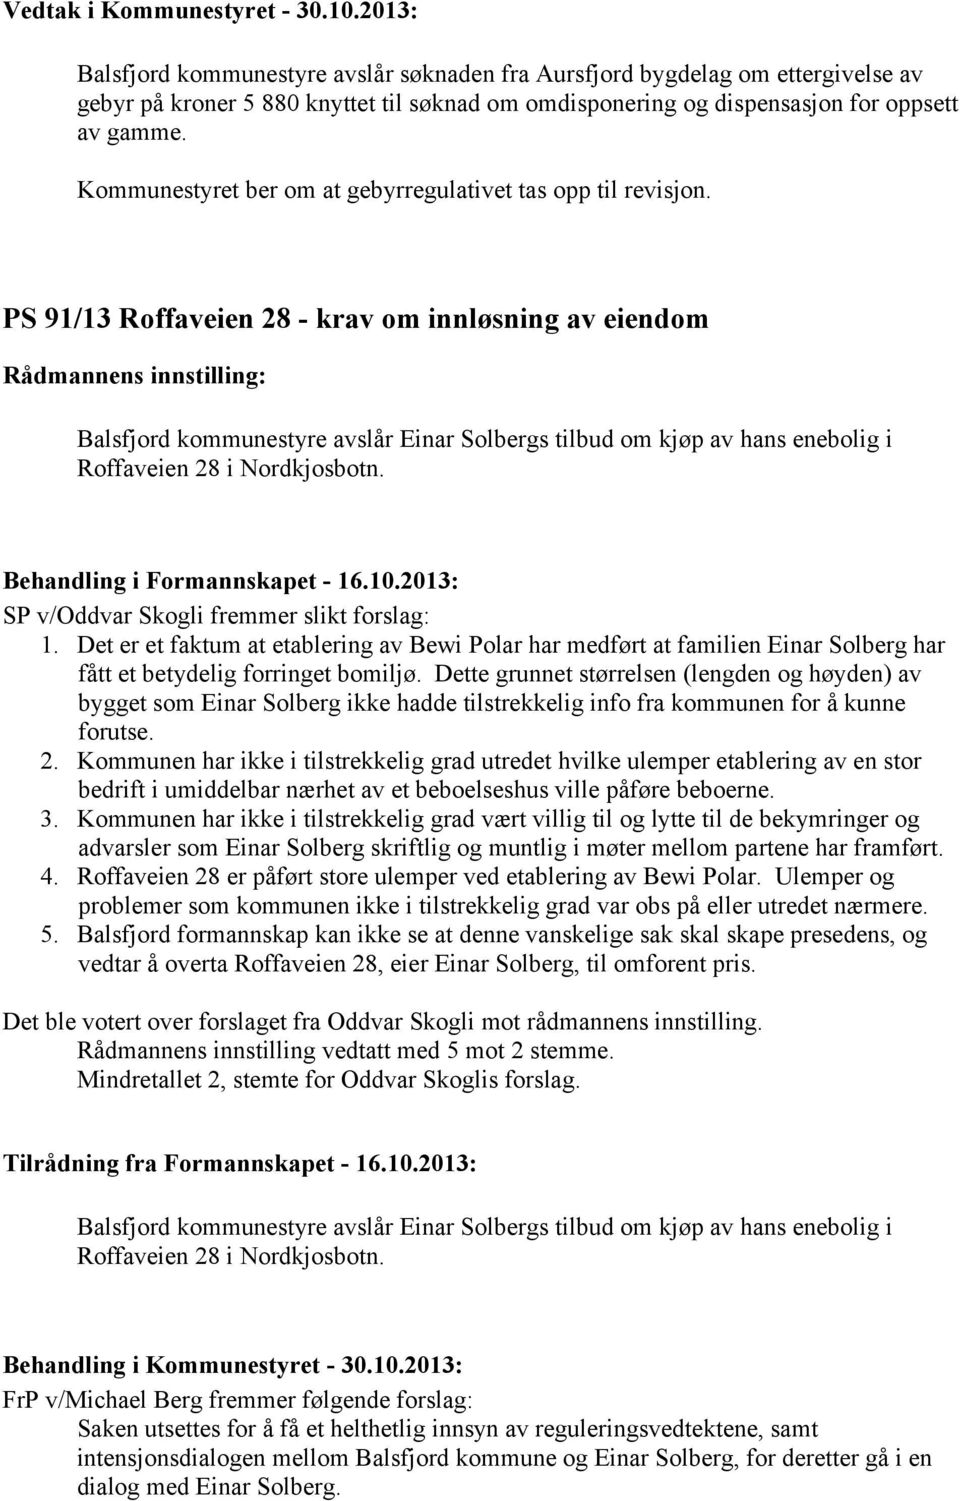 PS 91/13 Roffaveien 28 - krav om innløsning av eiendom Balsfjord kommunestyre avslår Einar Solbergs tilbud om kjøp av hans enebolig i Roffaveien 28 i Nordkjosbotn. Behandling i Formannskapet - 16.10.